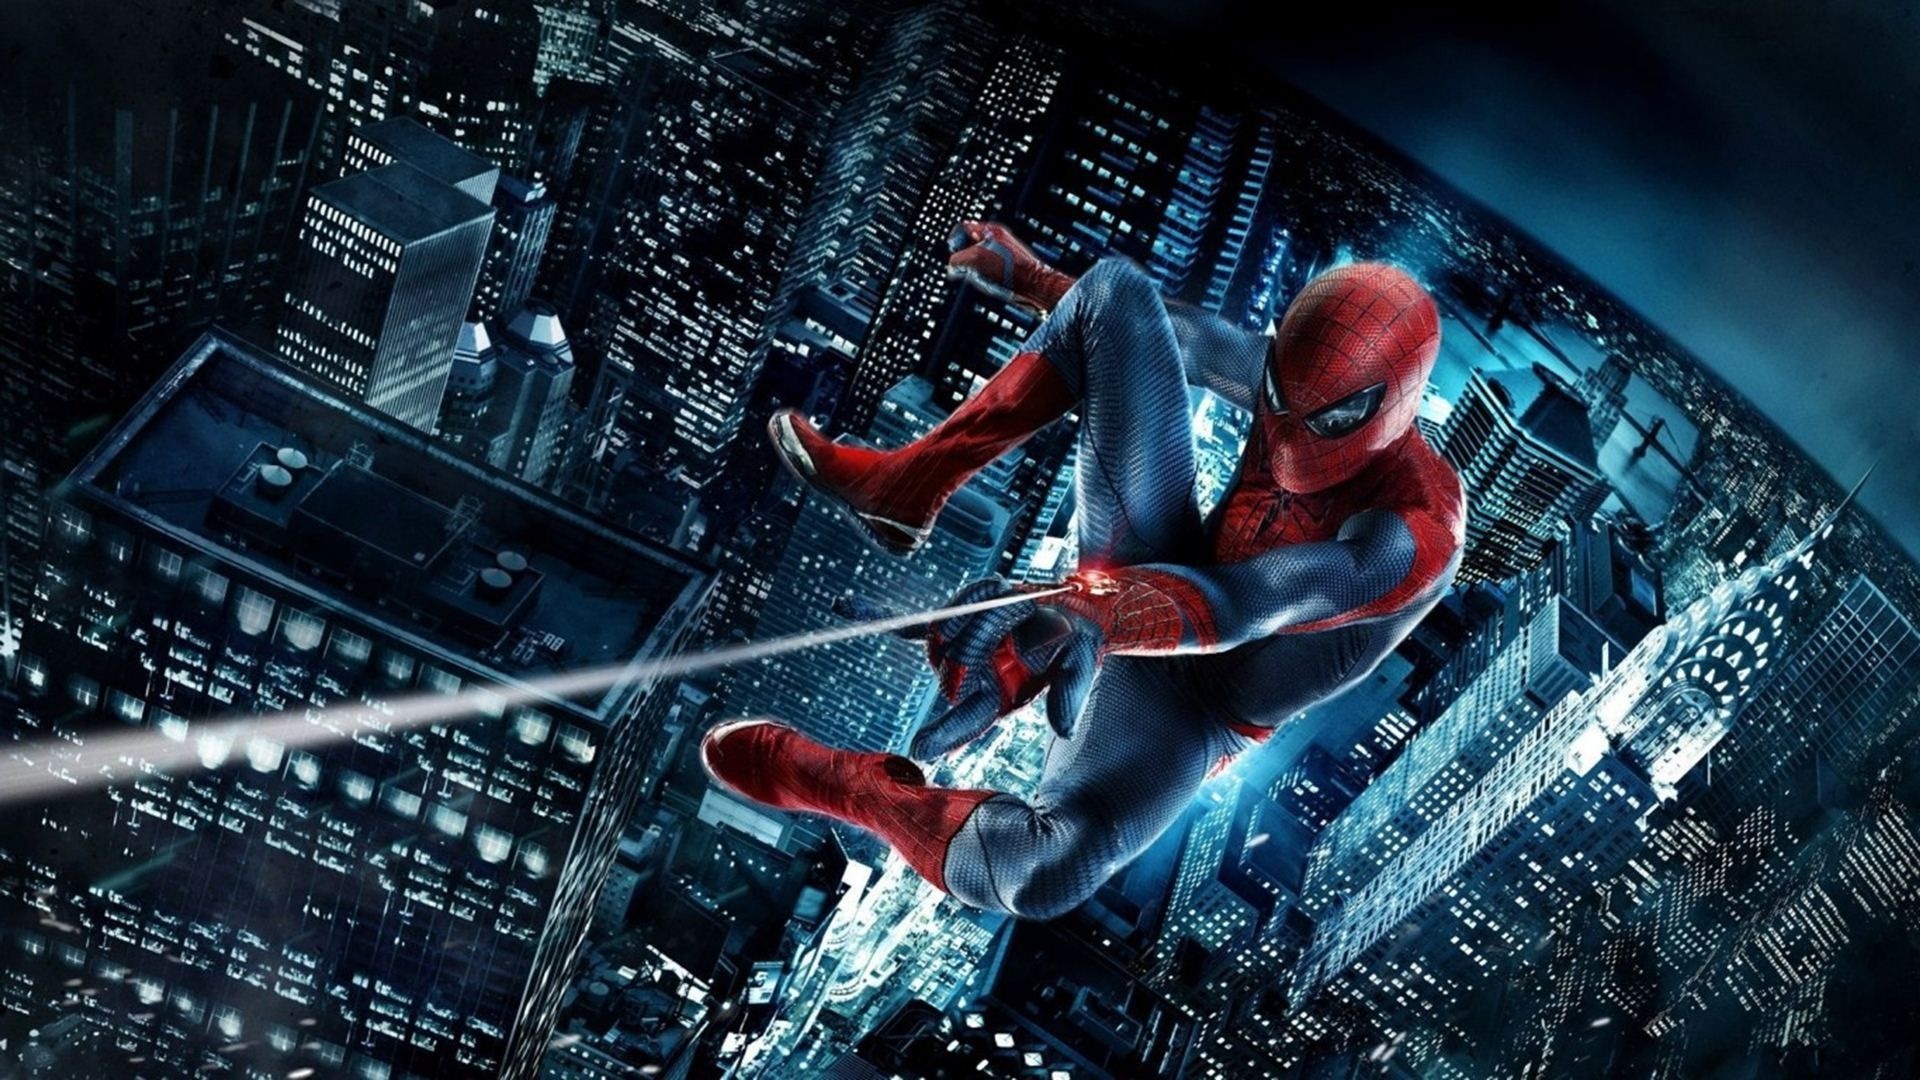 Amazing Spider-Man, Desktop wallpapers, Movie magic, Peter Parker's journey, 1920x1080 Full HD Desktop